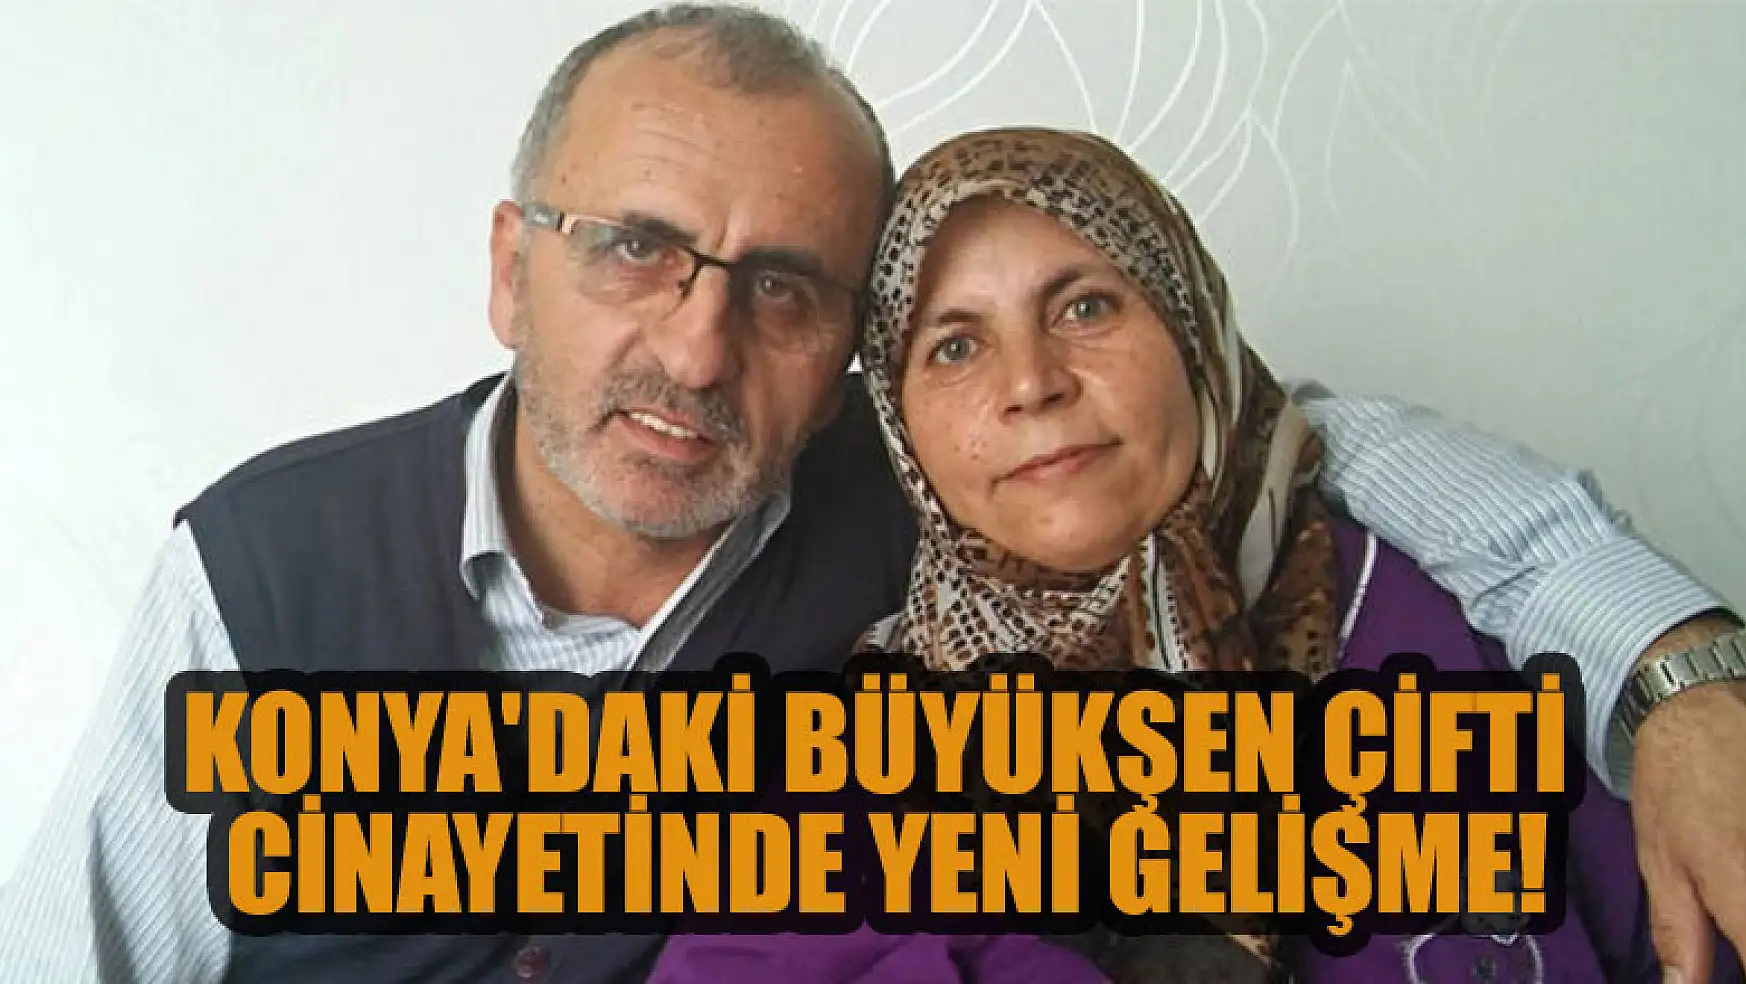 Konya'daki Büyükşen çifti cinayetinde yeni gelişme!